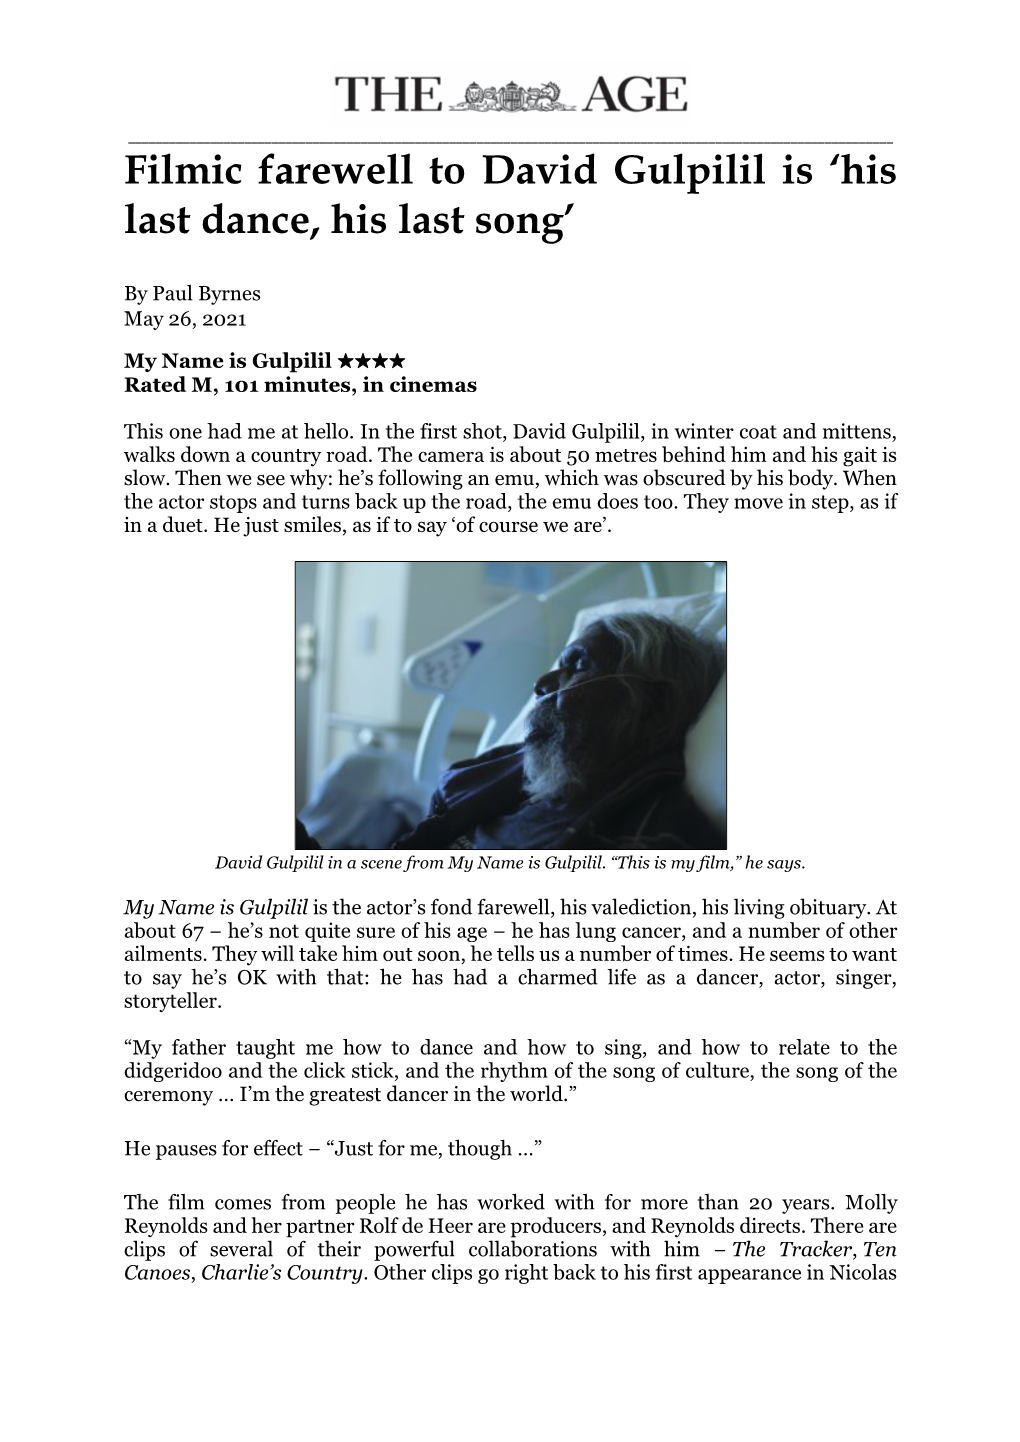 Filmic Farewell to David Gulpilil Is 'His Last Dance, His Last